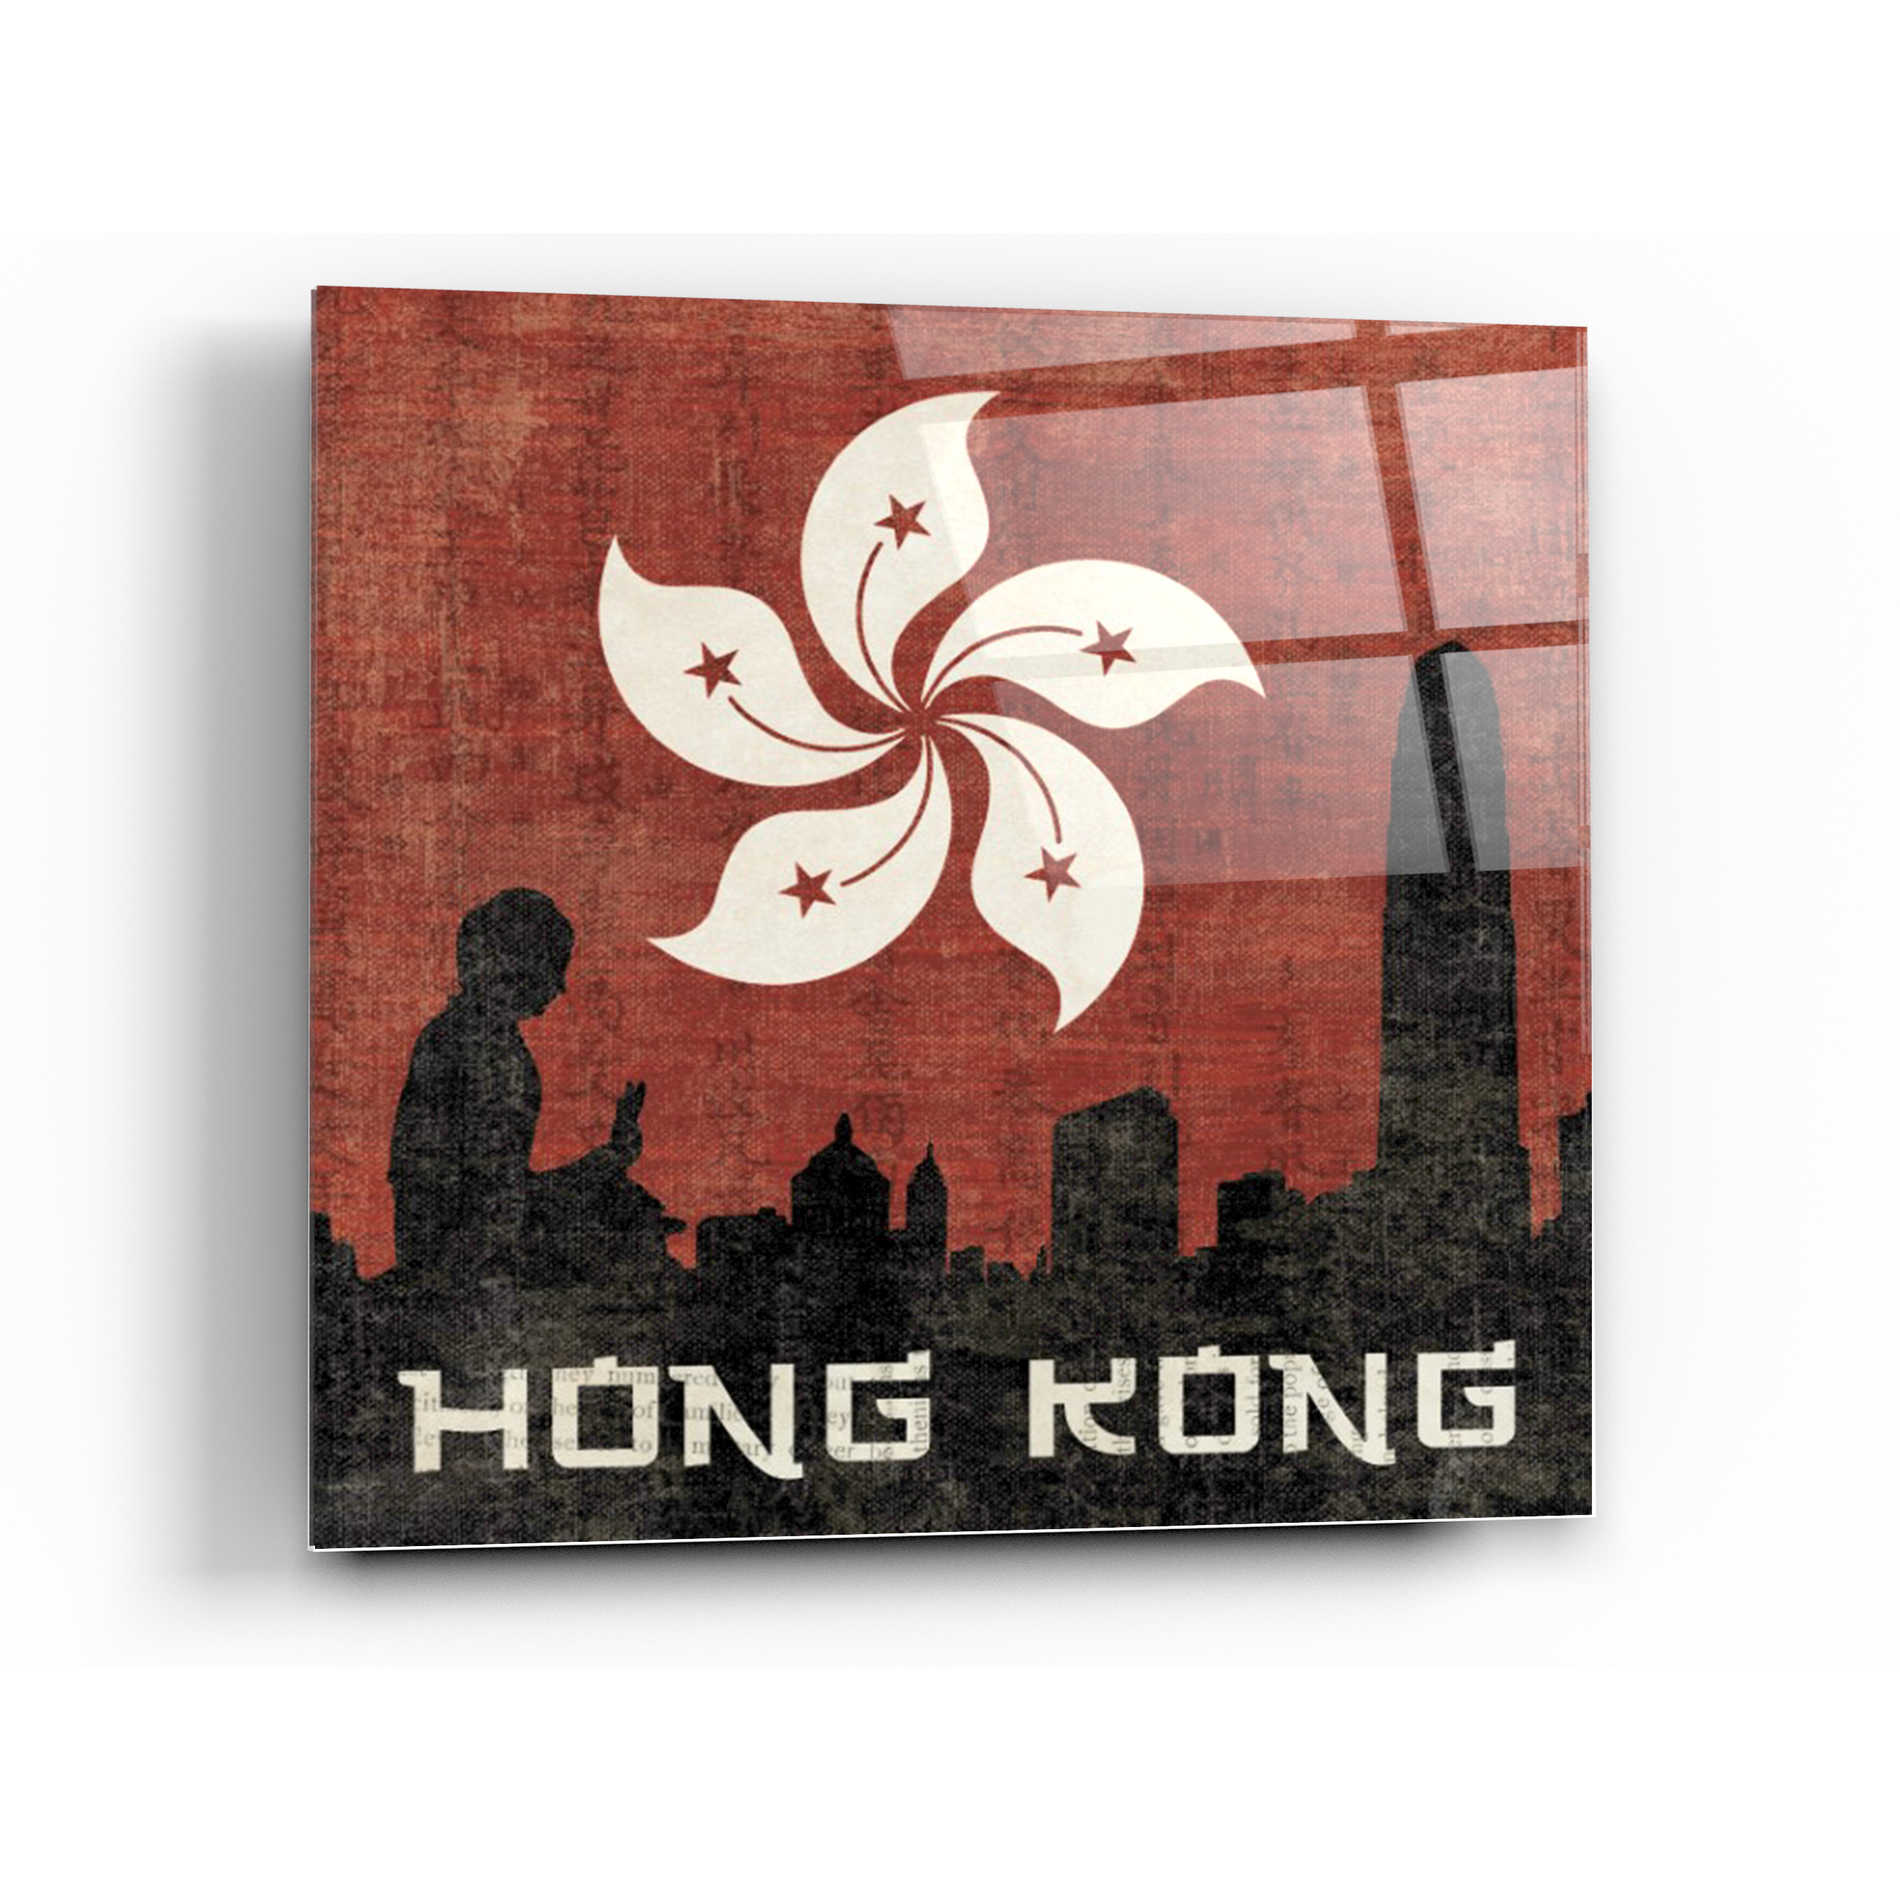 Epic Art 'Hong Kong' by Moira Hershey, Acrylic Glass Wall Art,36x36